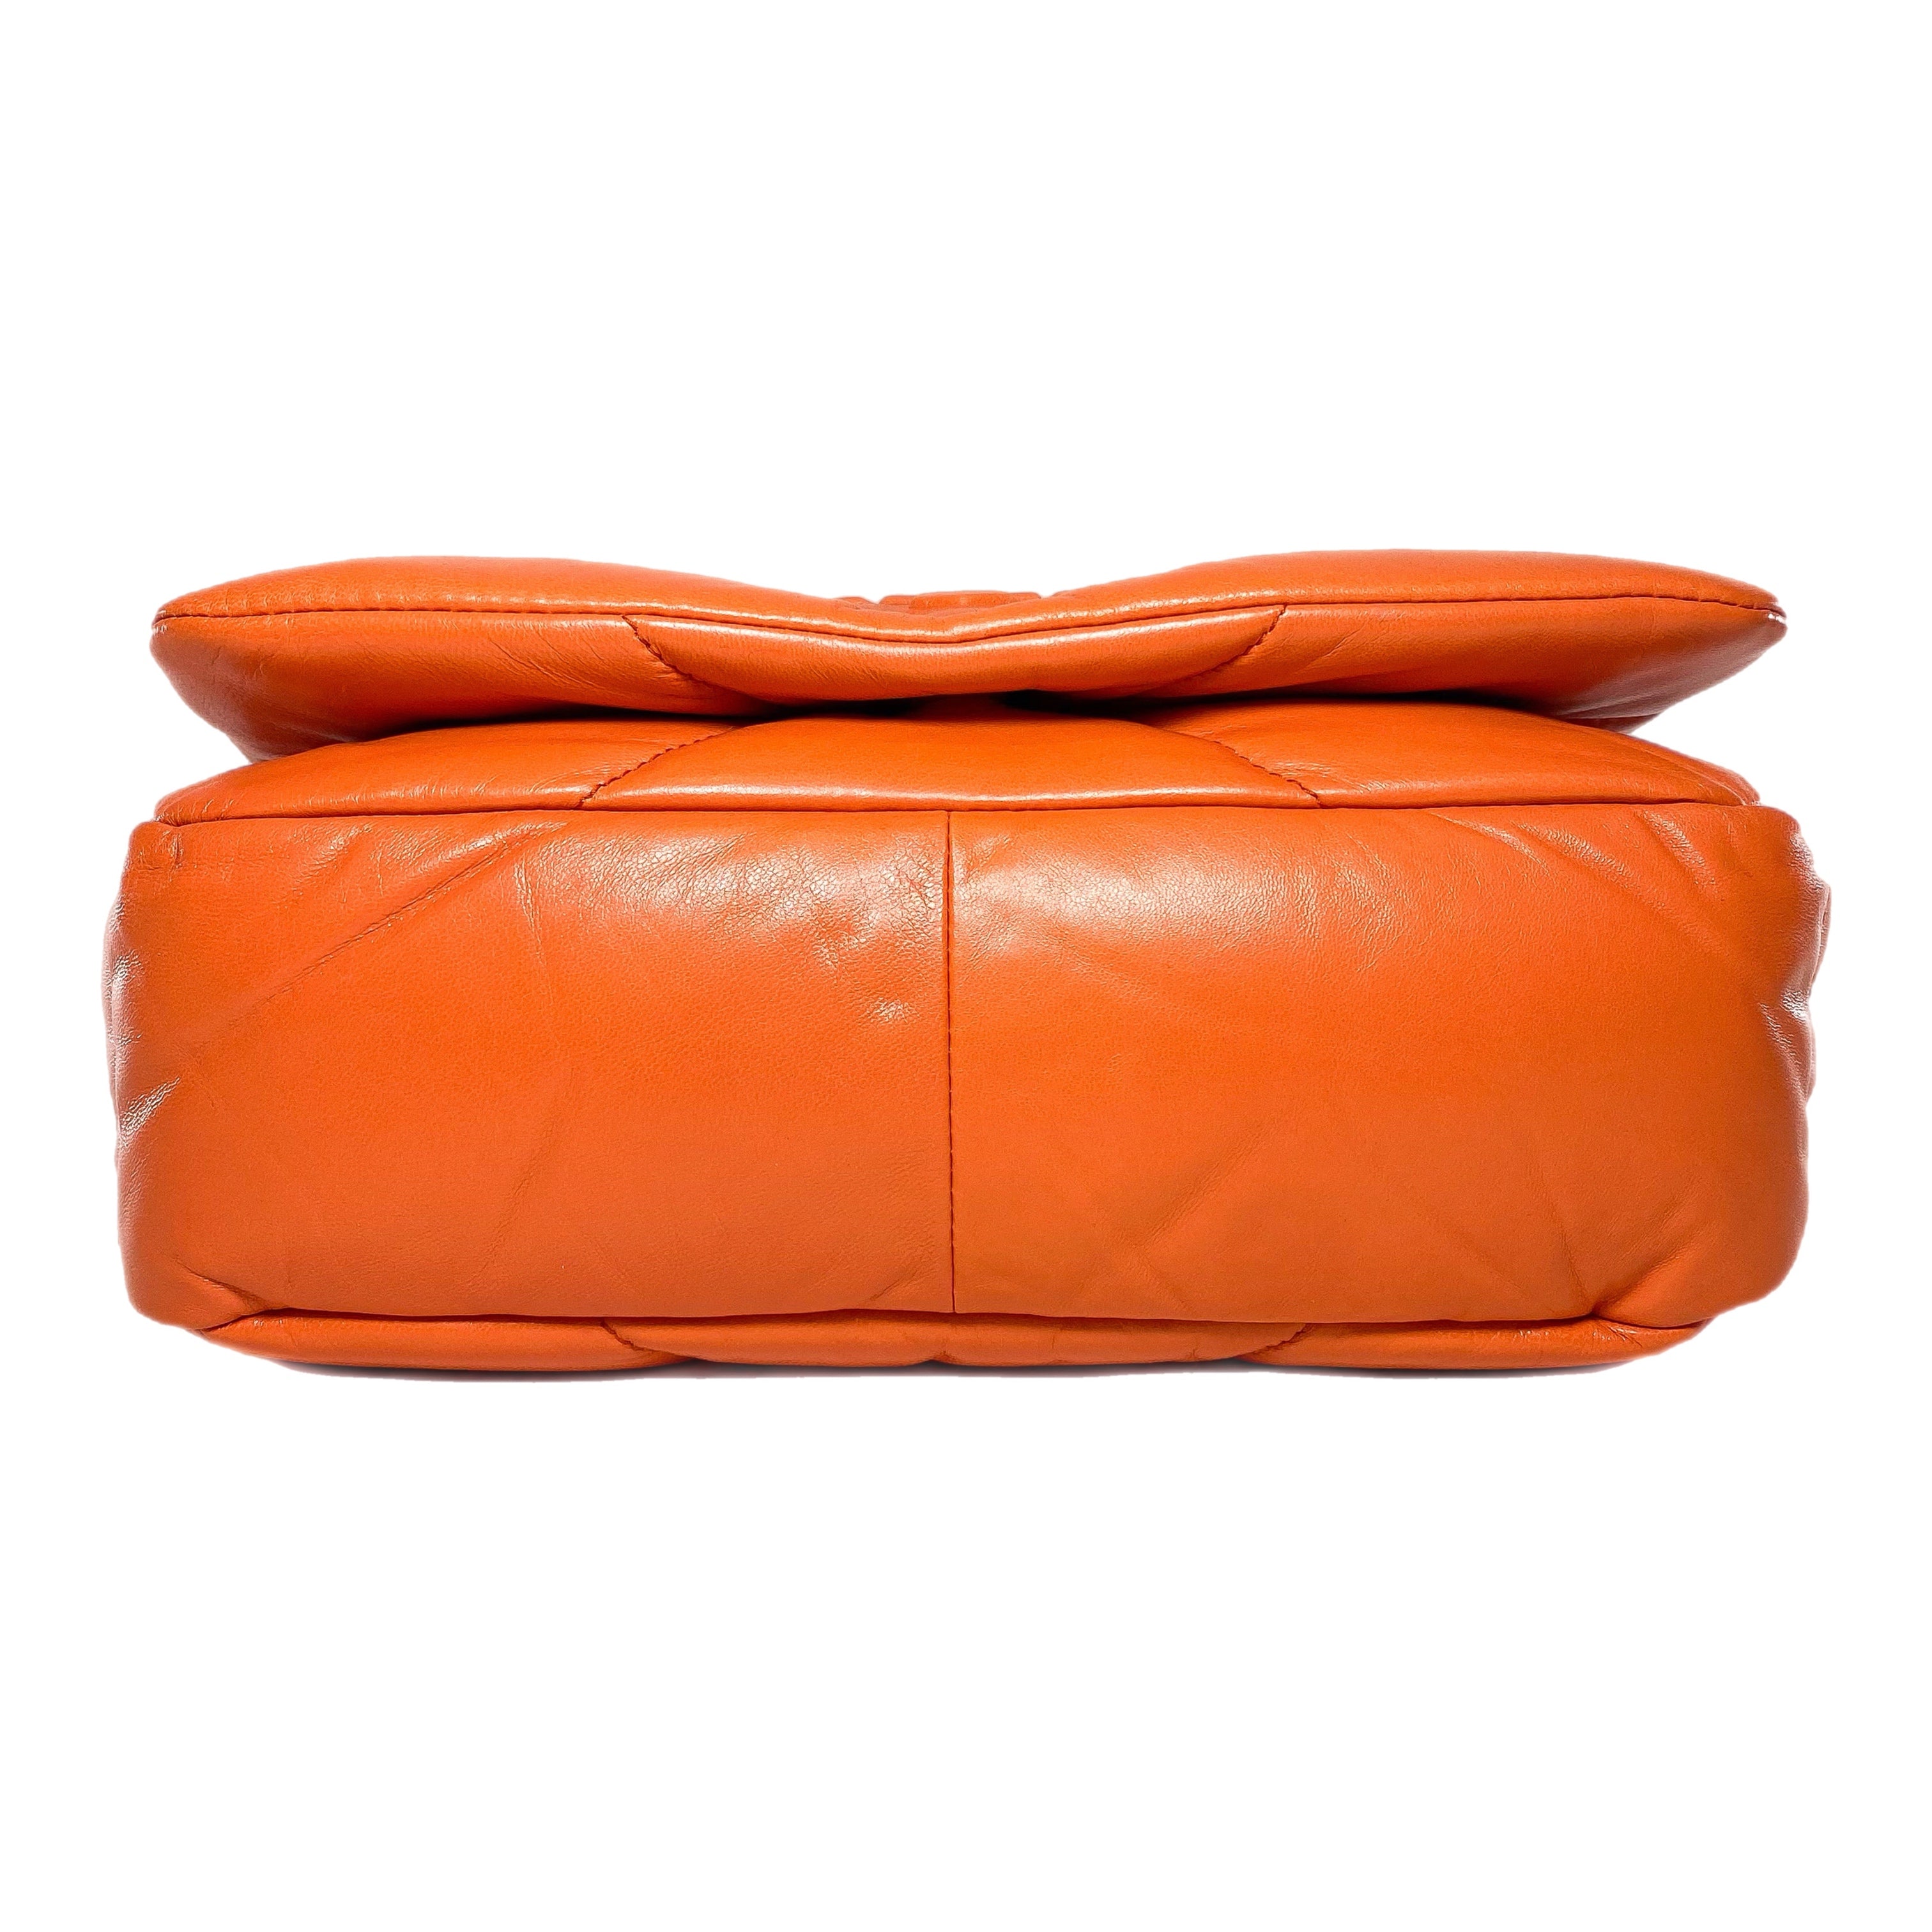 Prada Quilted Orange Nappa Shoulder Bag